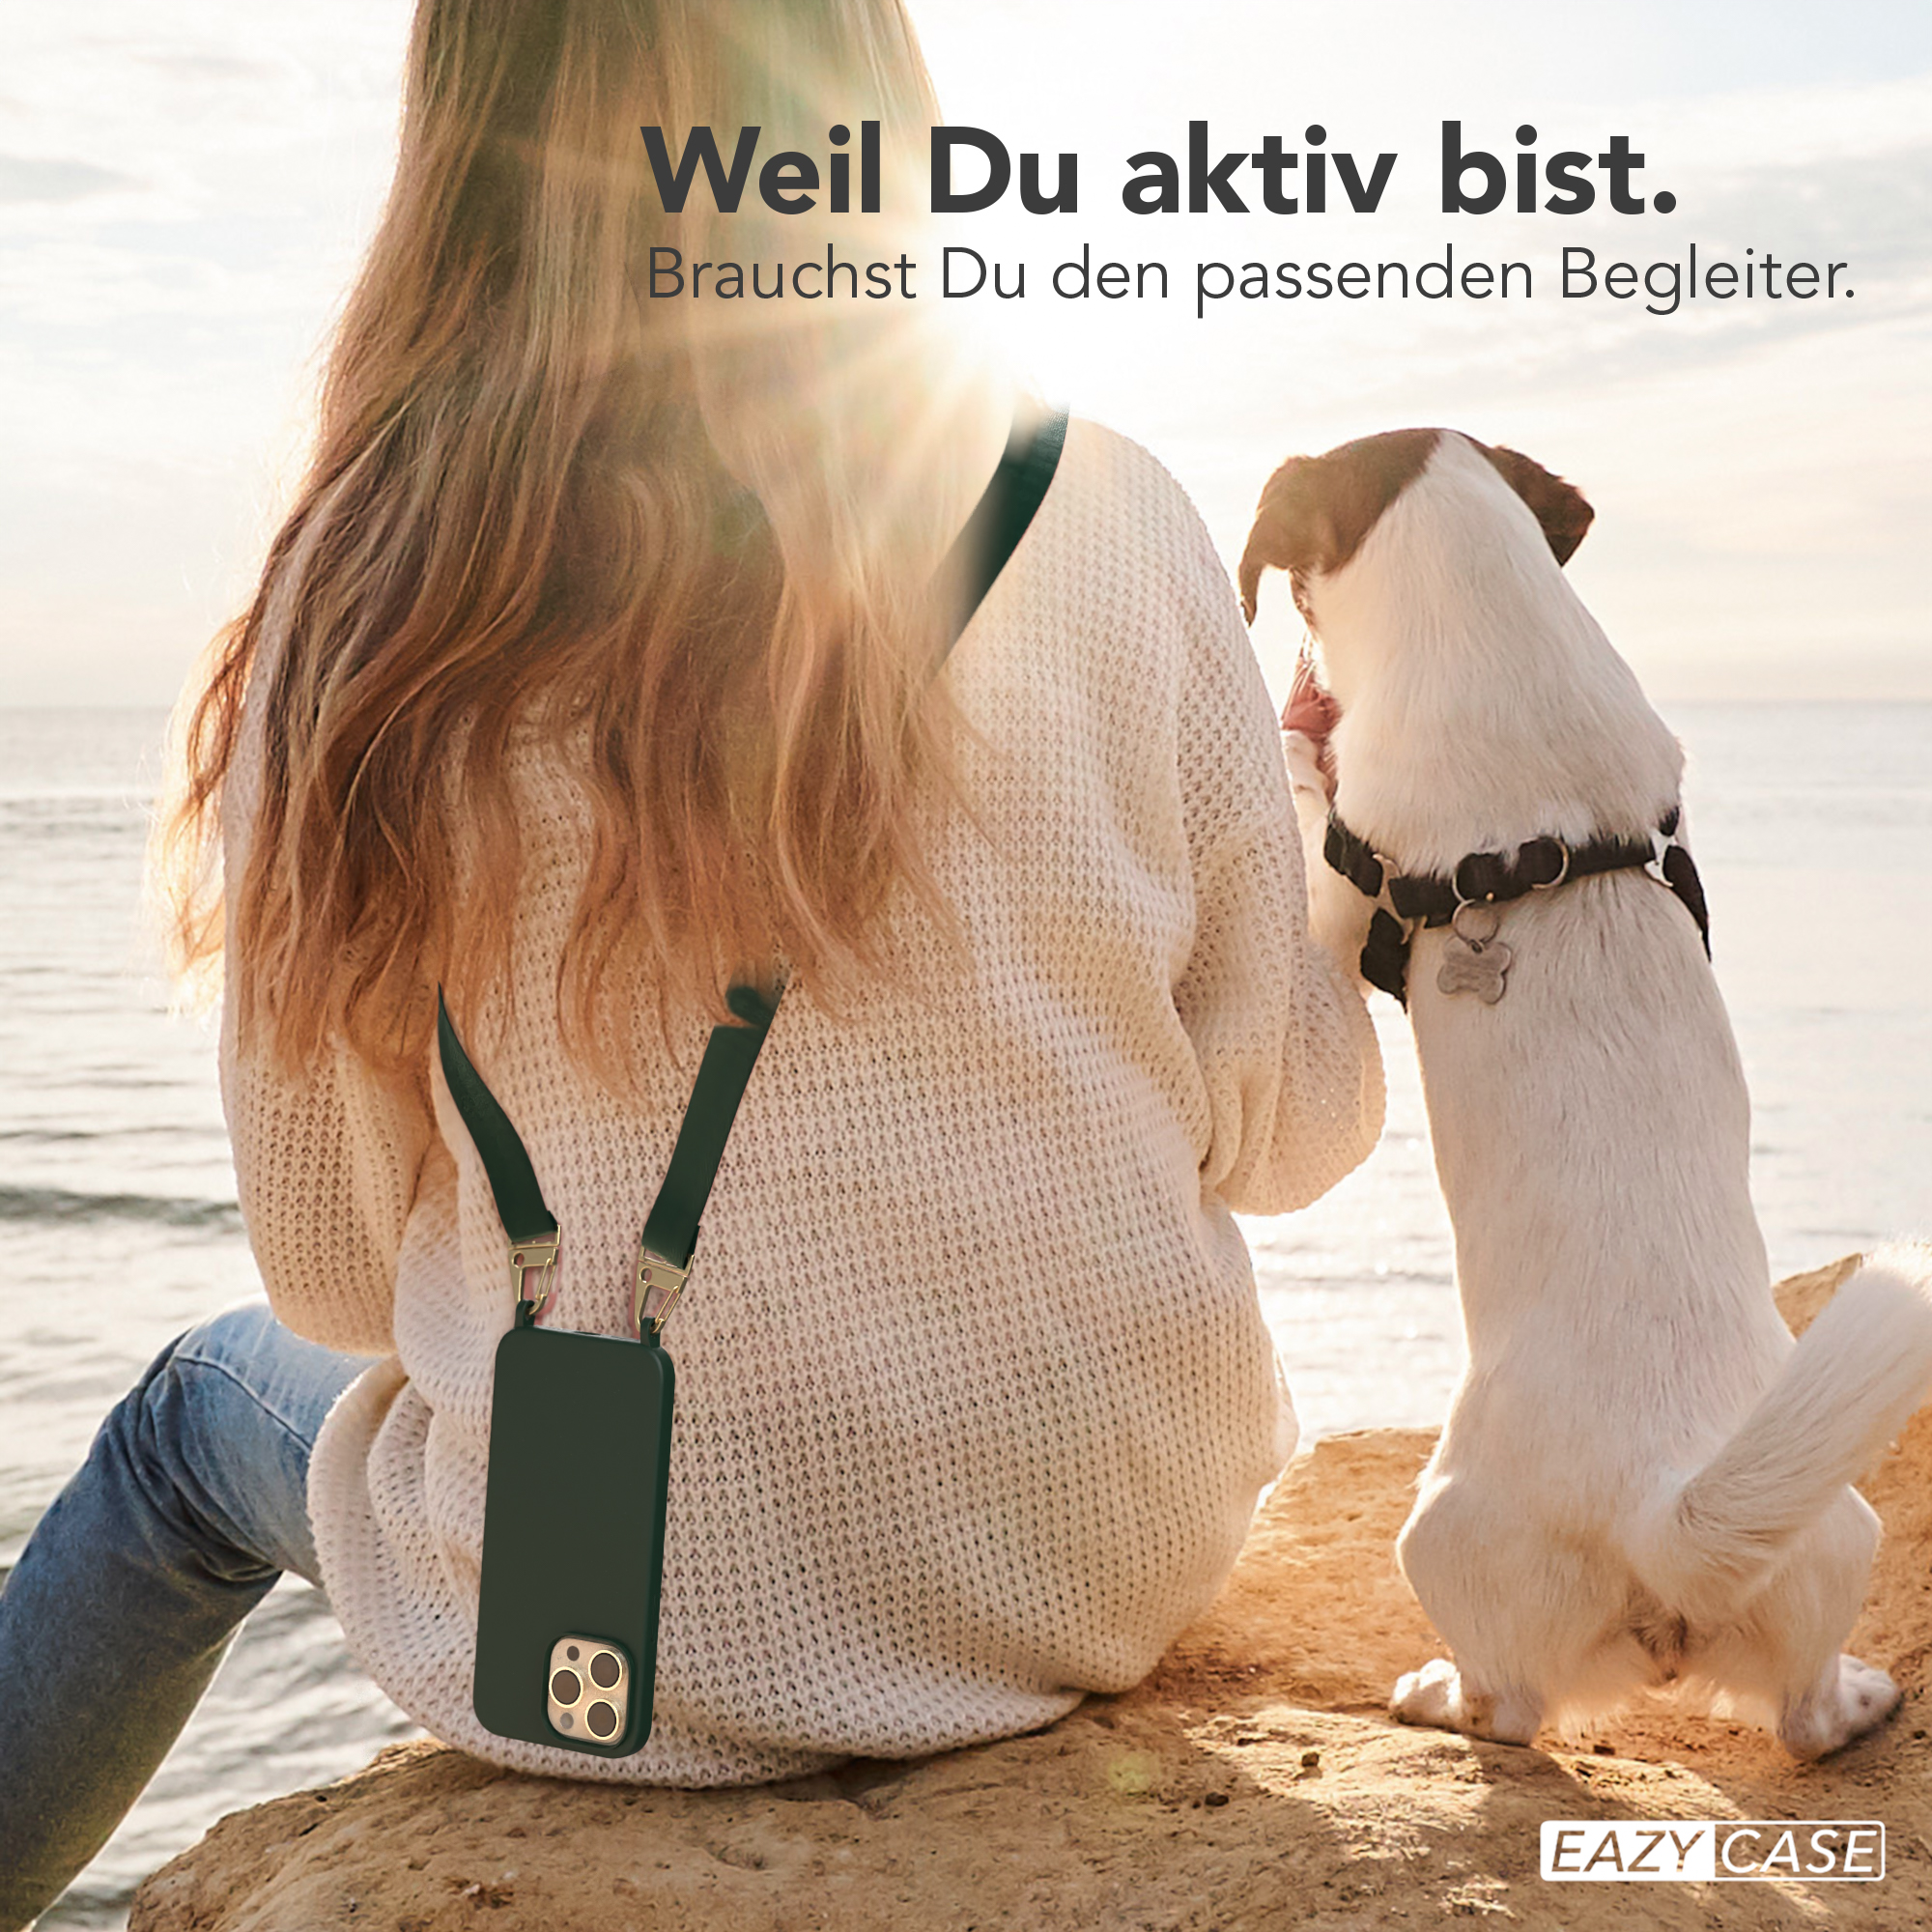 EAZY CASE Kette Pro iPhone Dunkel / Premium Max, 14 Grün Apple, Gold Hülle, Handy Umhängetasche, mit Breit Silikon Karabiner